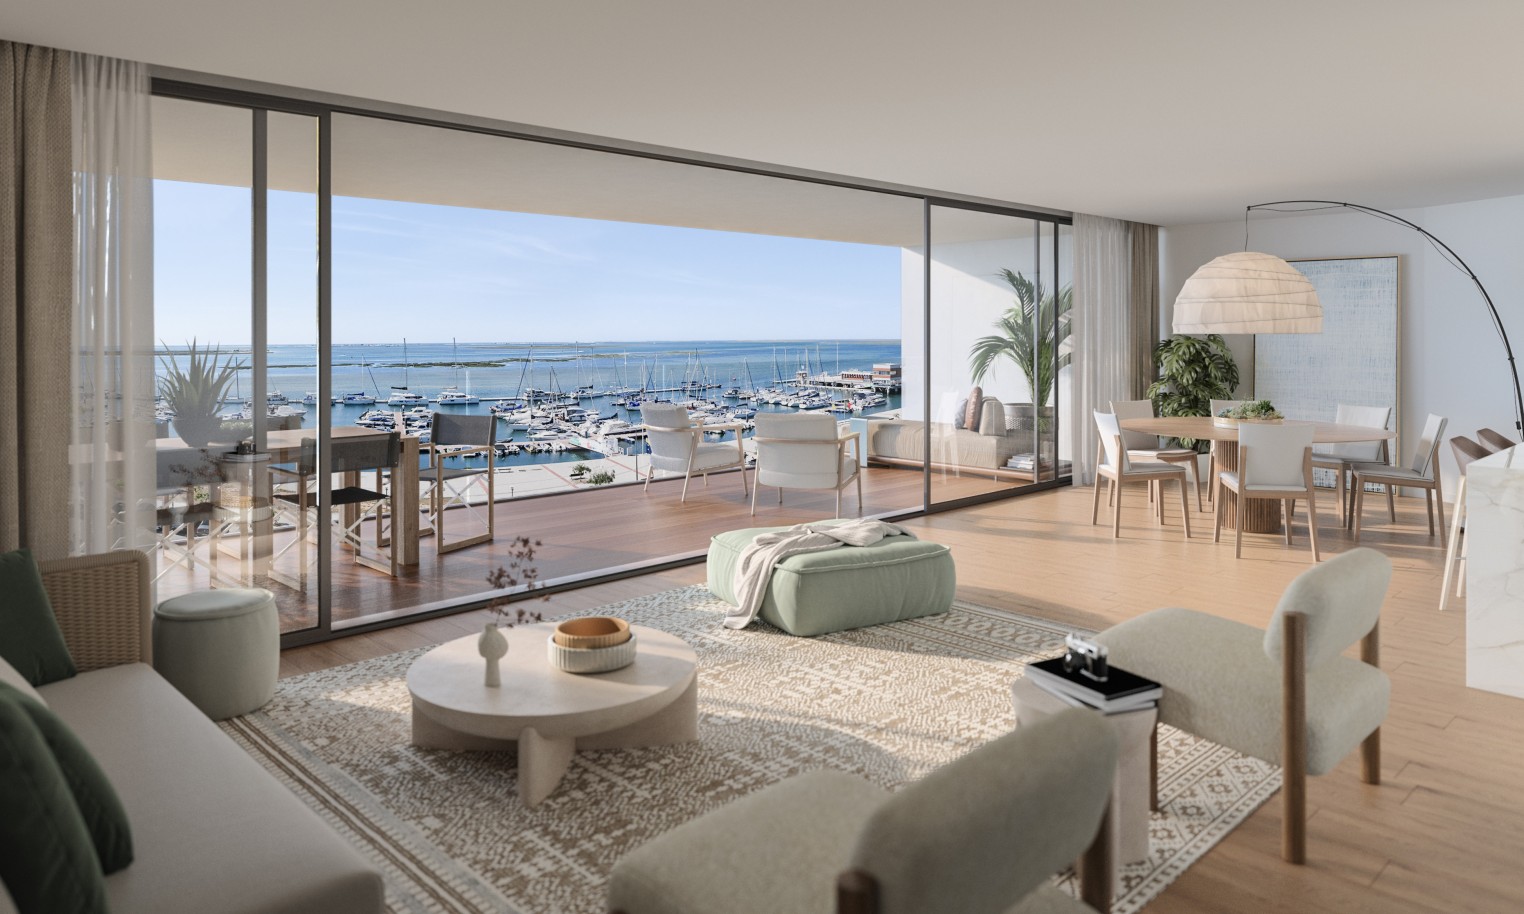 Pisos nuevos con vistas al mar, 1, 2 y 3 dormitorios, en venta en Olhão, Algarve_244233